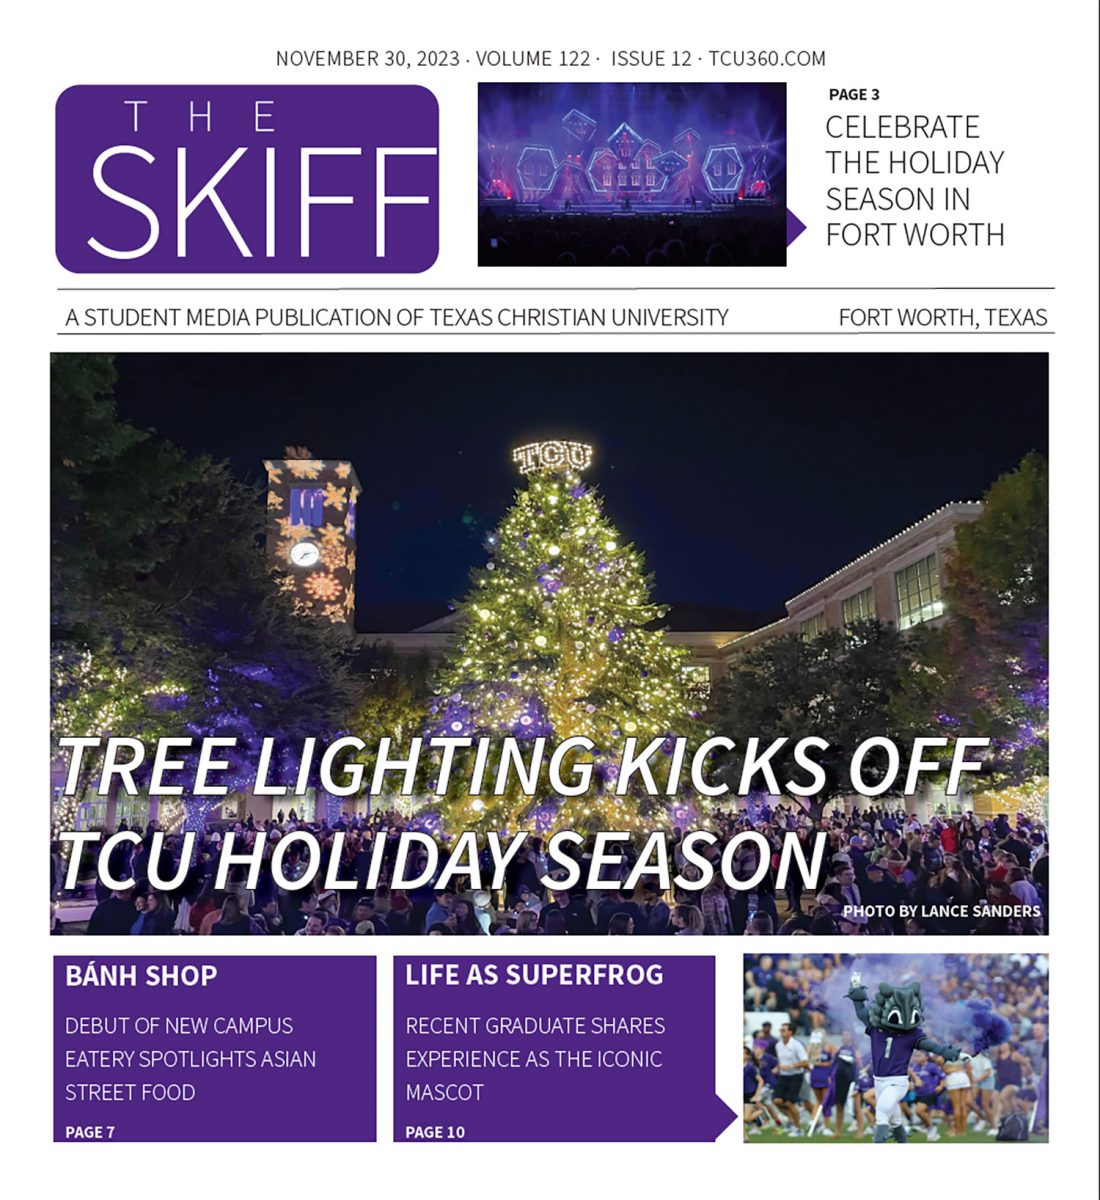 The Skiff: Tree lighting kicks off holiday season